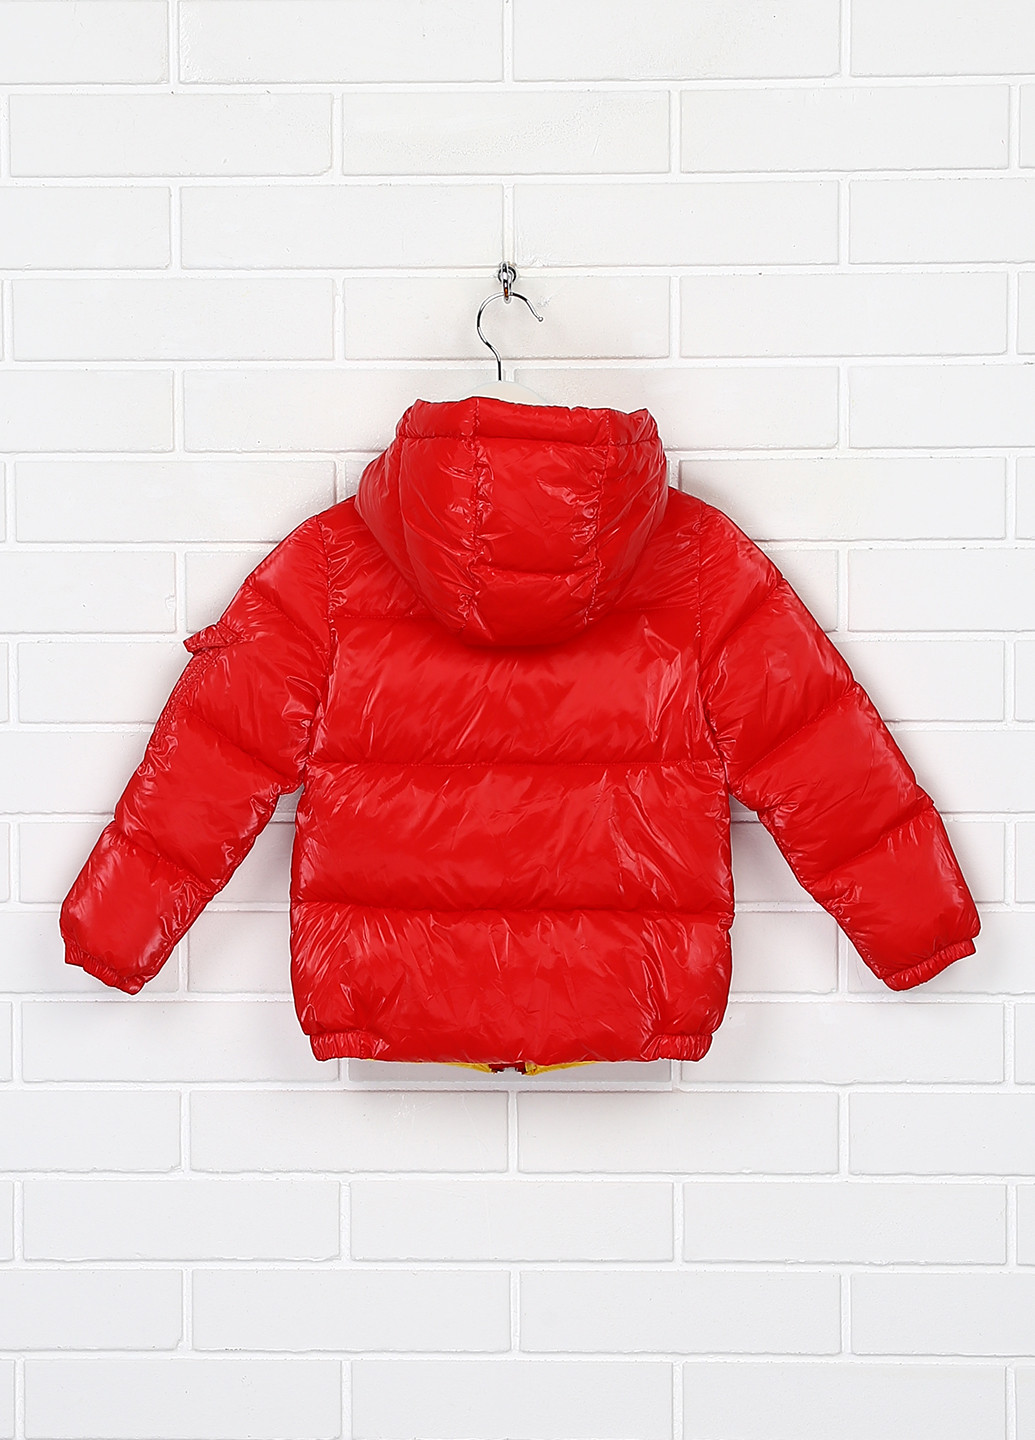 Красная демисезонная куртка HKGSM